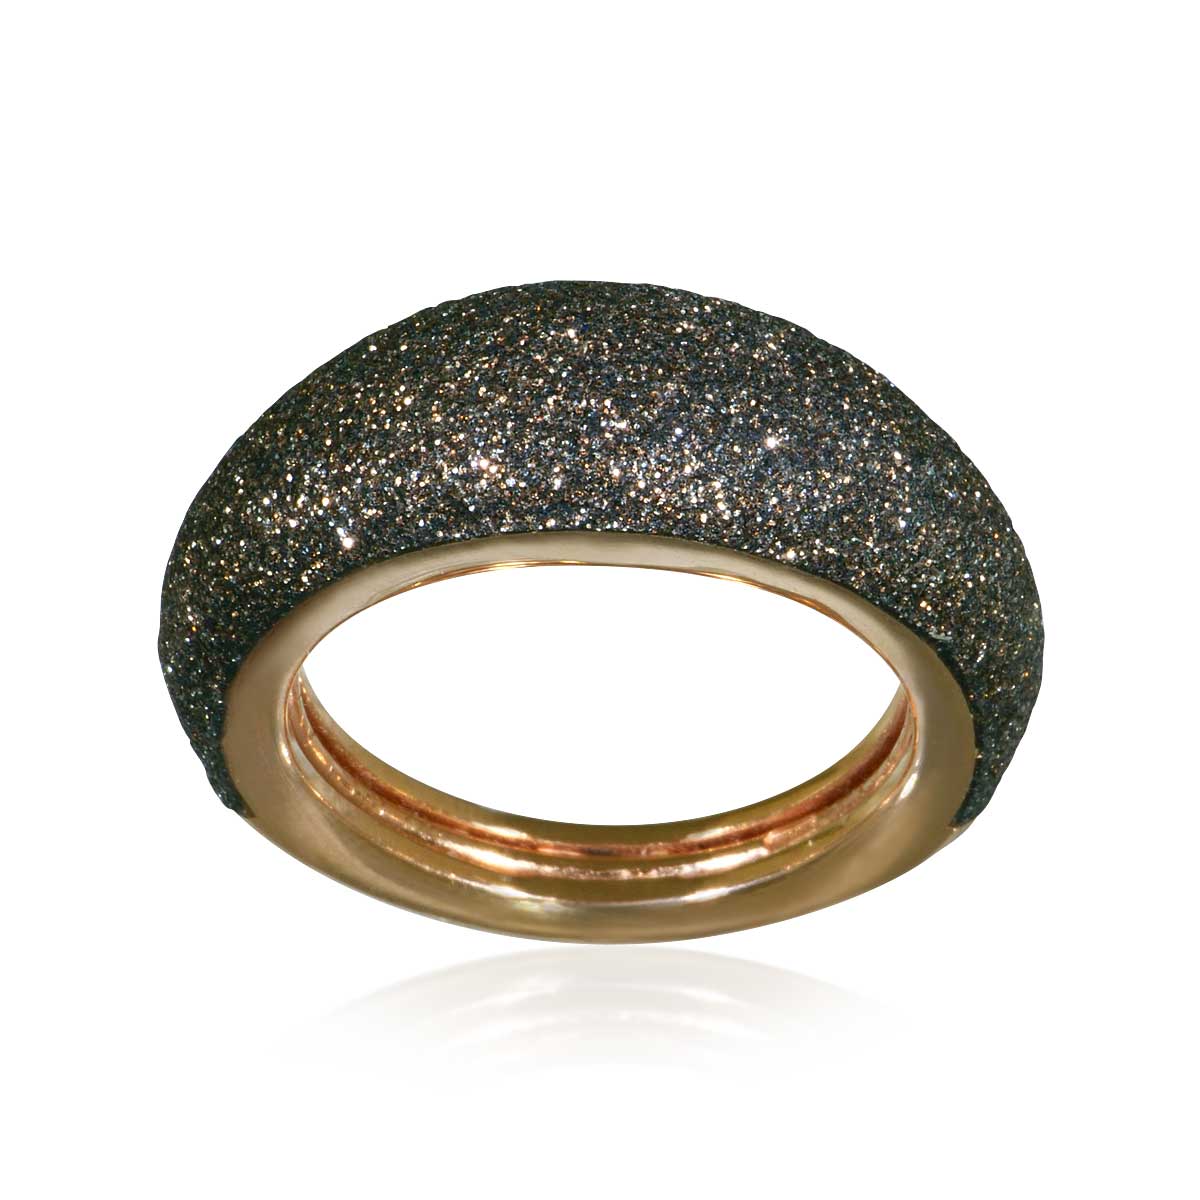 Suche nach individuellen Accessoires!Set Collier Ring Armband und Ohrstecker Sterlingsilber vergoldet 